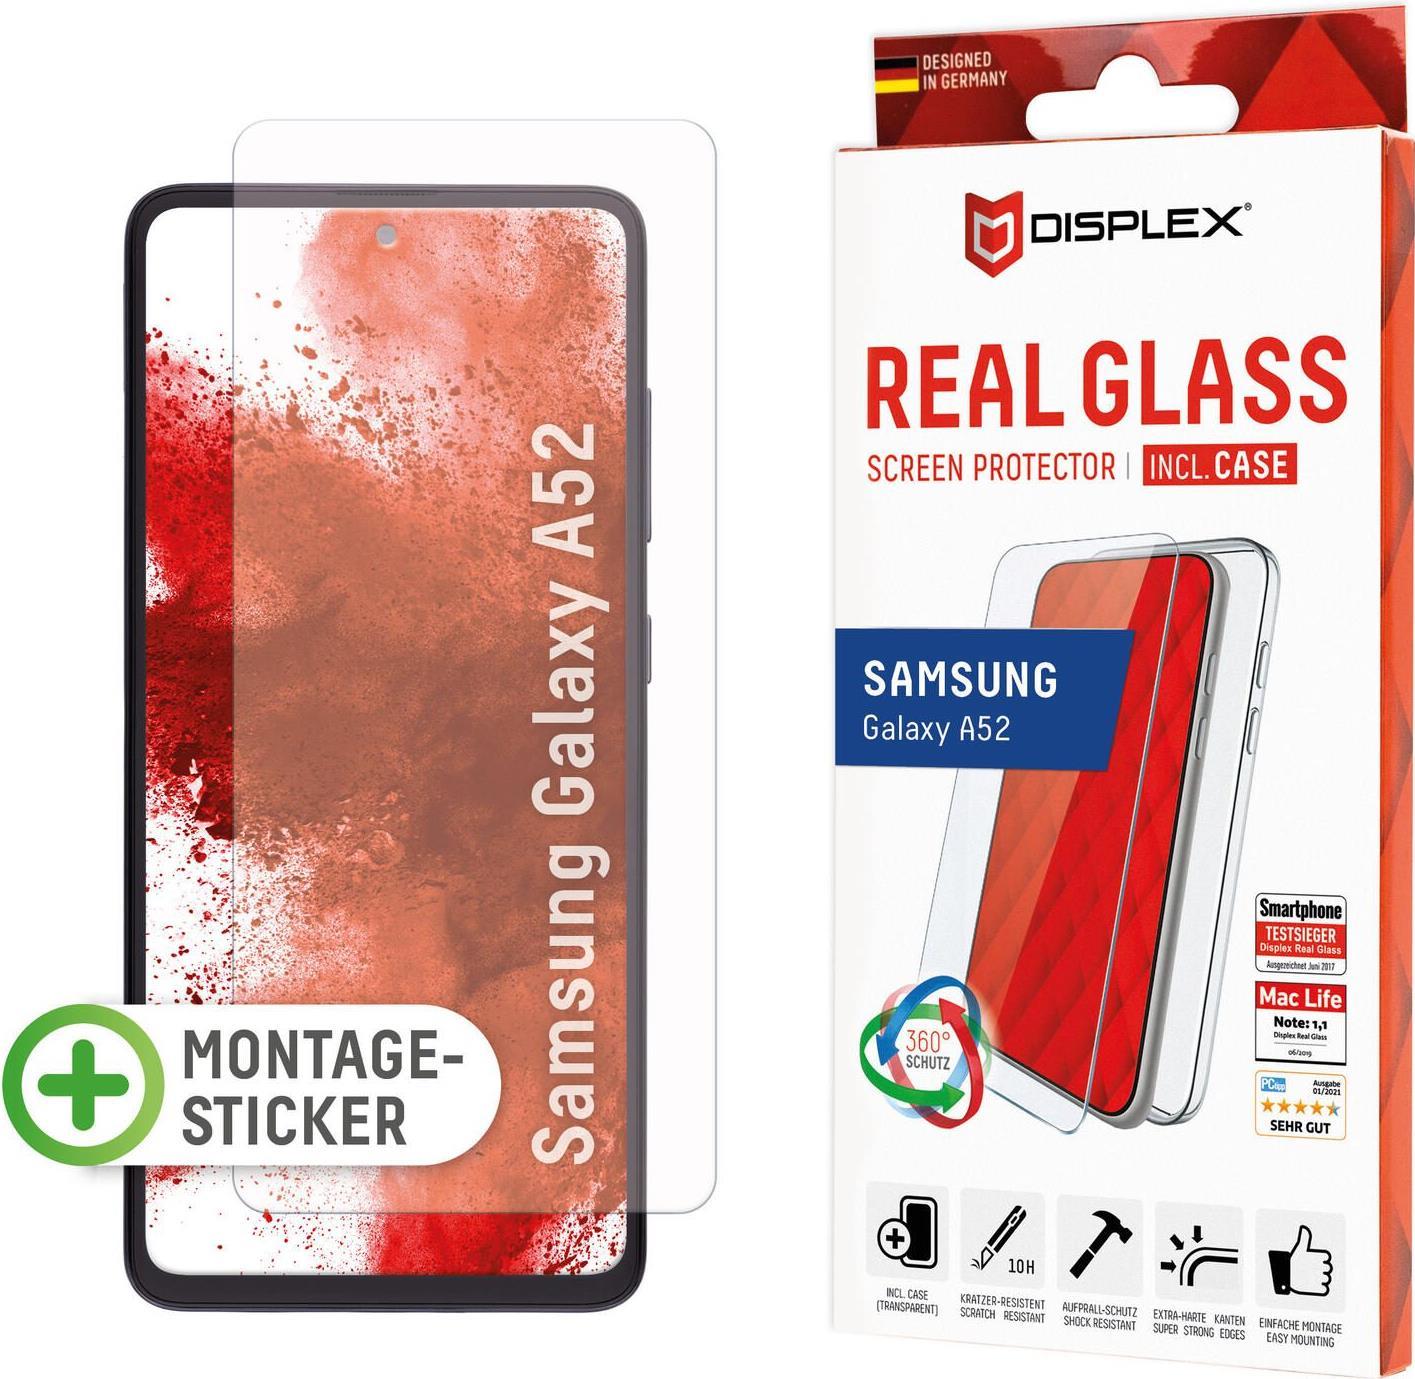 Displex Panzerglas + Case für Samsung Galaxy A52/A52 5G (01459)